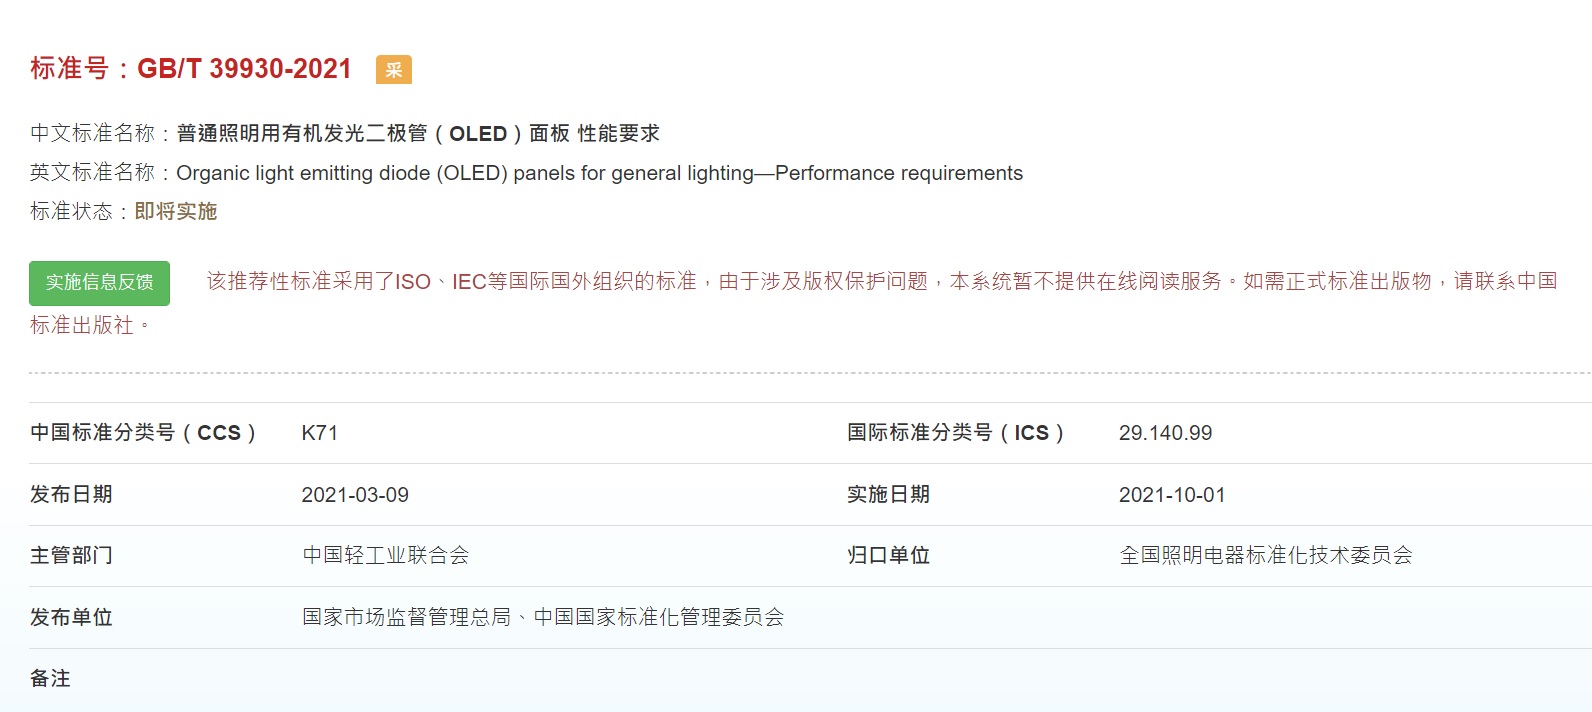 普通照明用有机发光二极管（OLED）面板性能要求 GB/T 39930-2021 正式发布